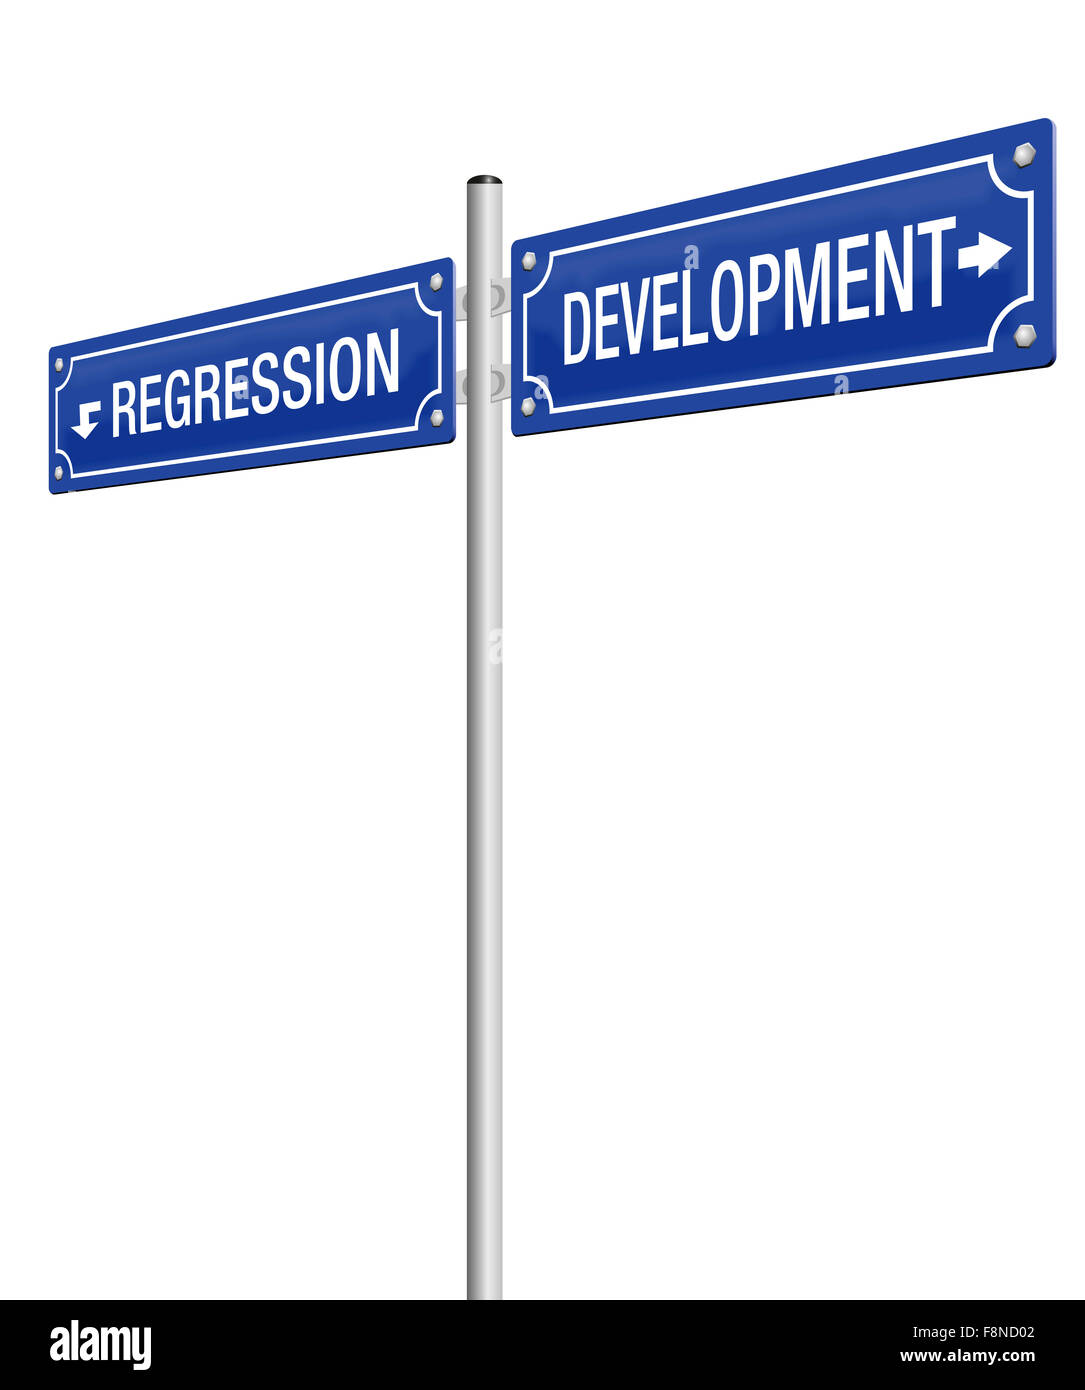 Développement et la régression, écrite sur deux indications. Illustration sur fond blanc. Banque D'Images